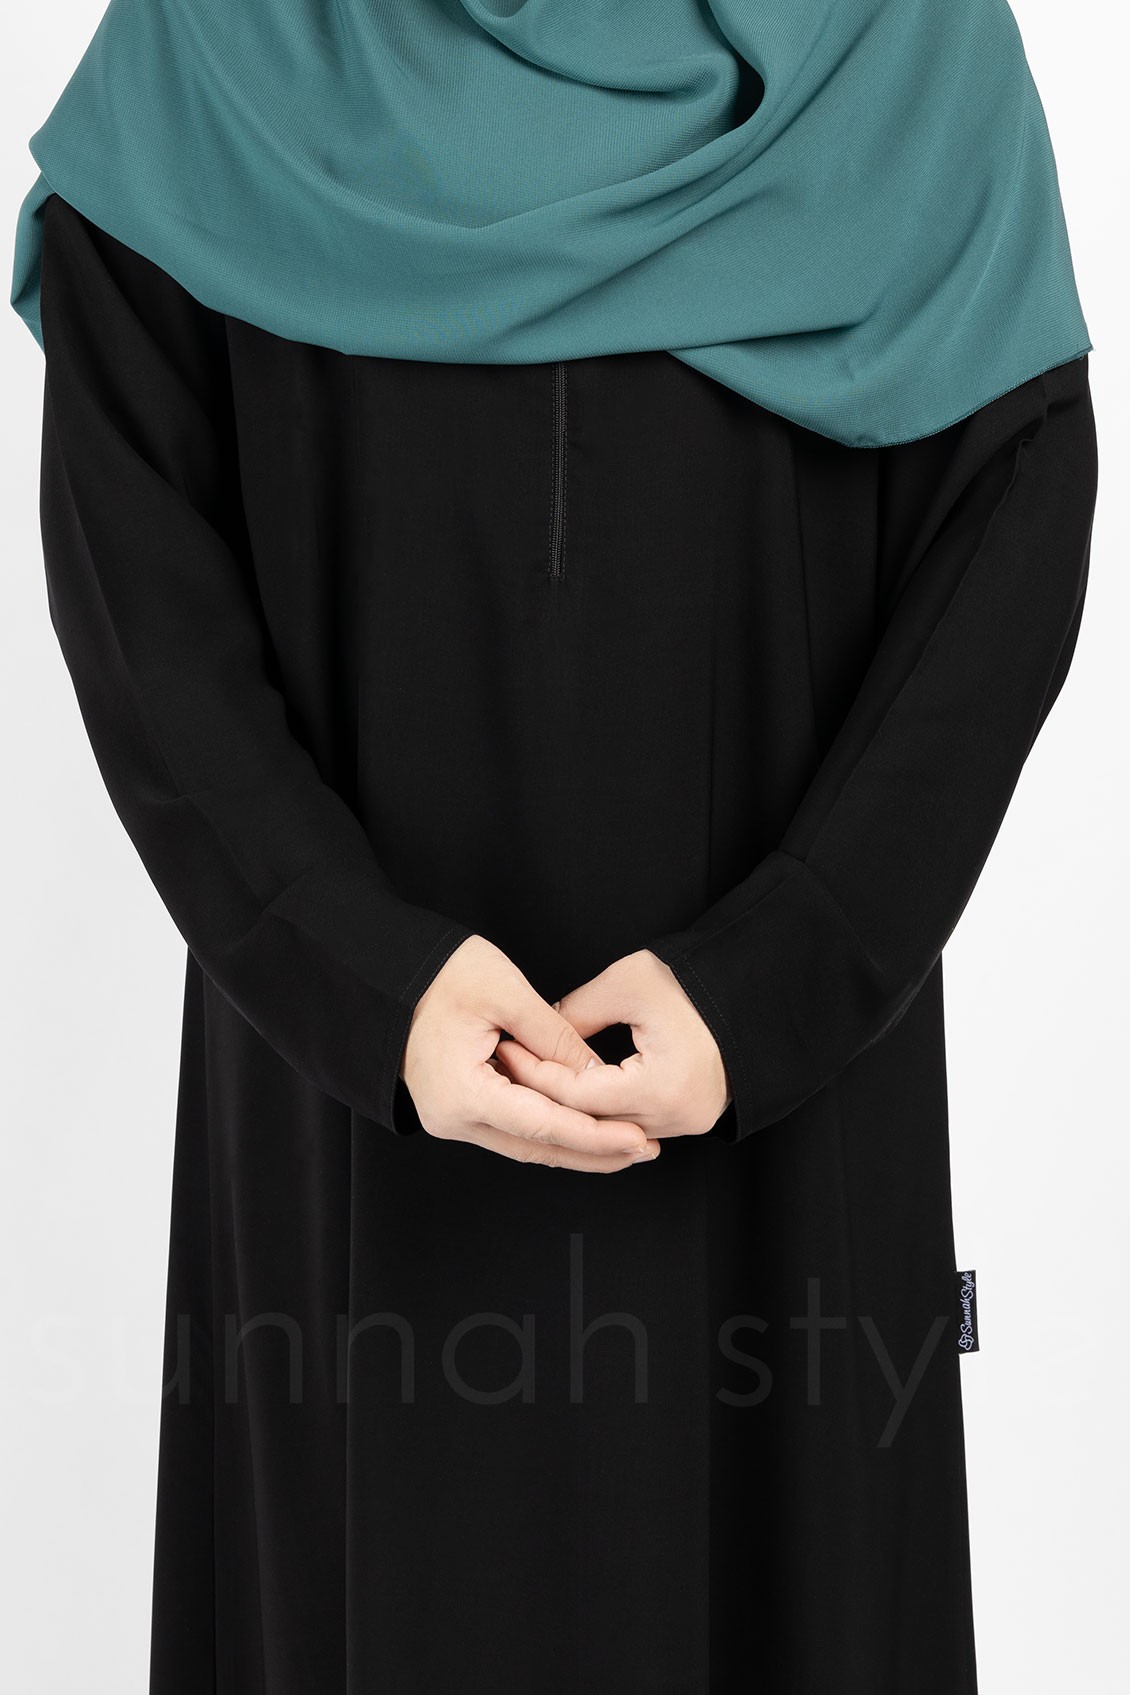 Sunnah Style Plain Closed Abaya Slim Black